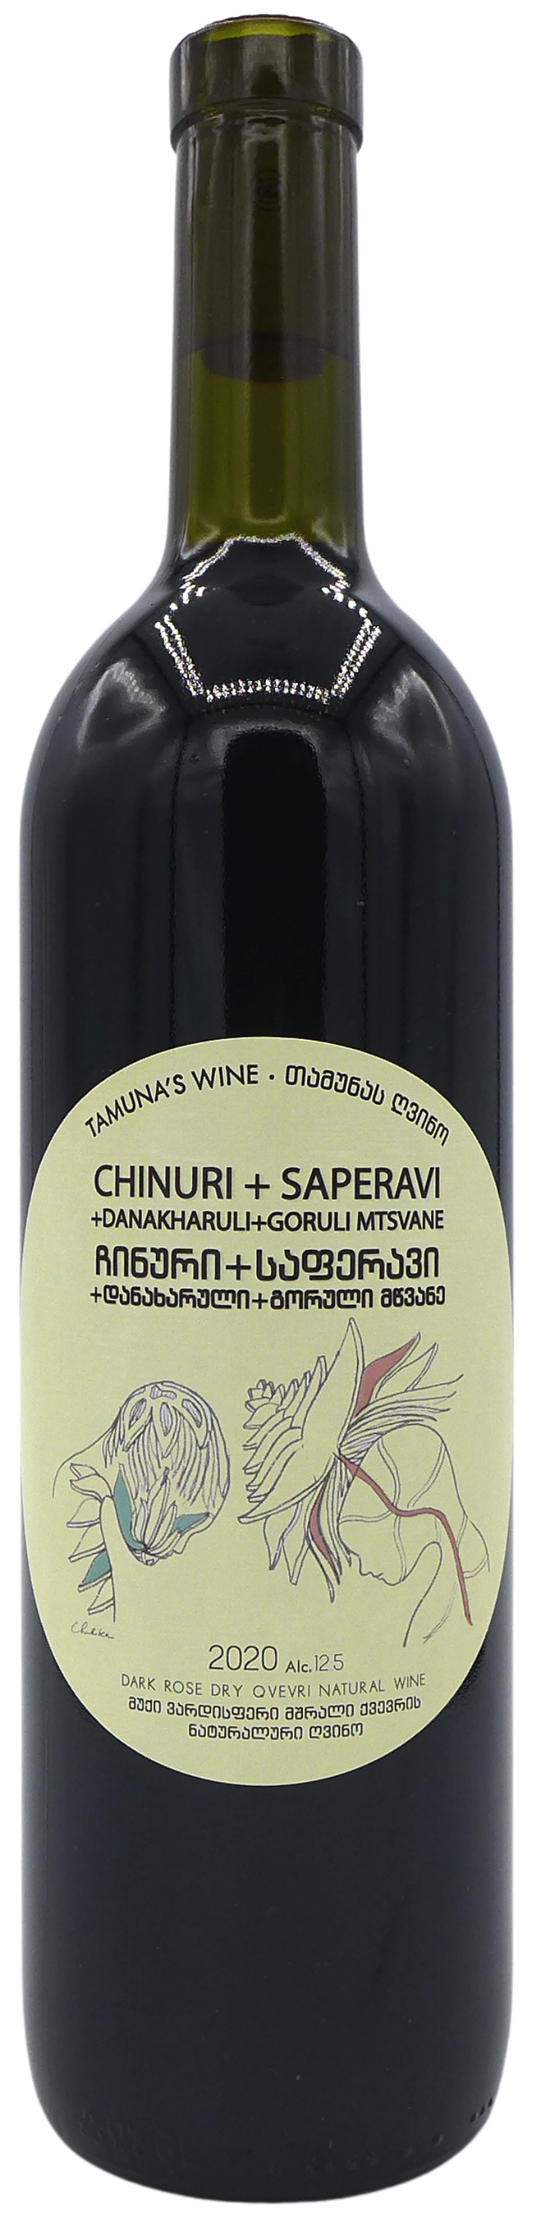 タムナズ・ワイン  チヌリ・アンド・サペラヴィ・クヴェヴリ 2020 TAMUNA'S WINE  CHINURI & SAPERAVI QVEVRI